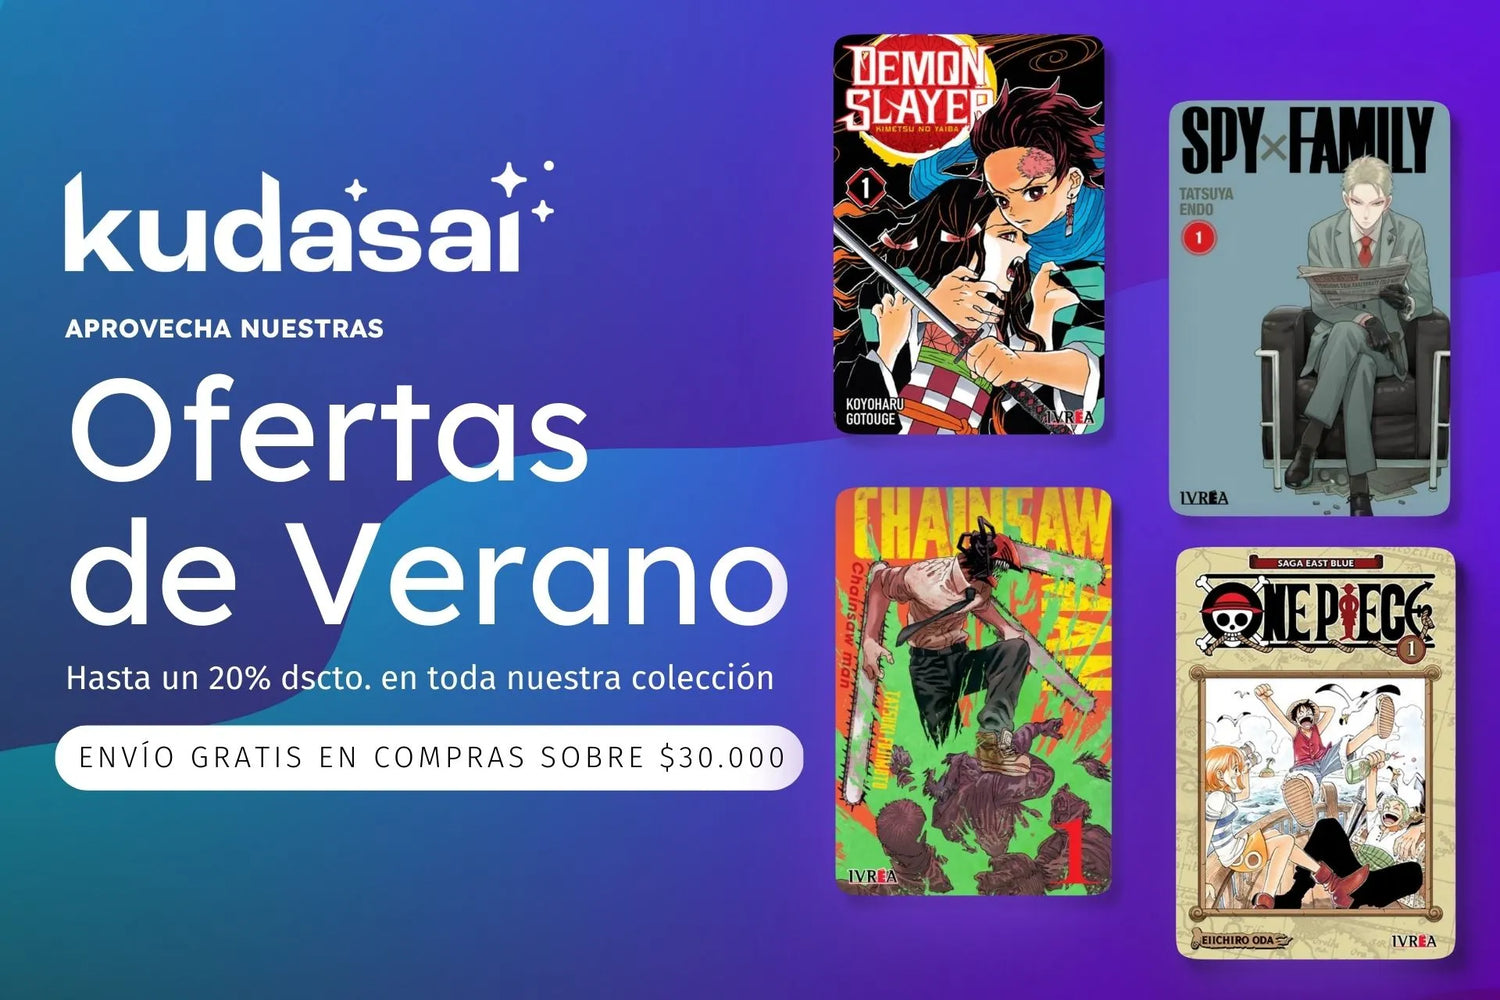 Cordero Consultar Accesible Kudasai | Tienda de Manga Chile